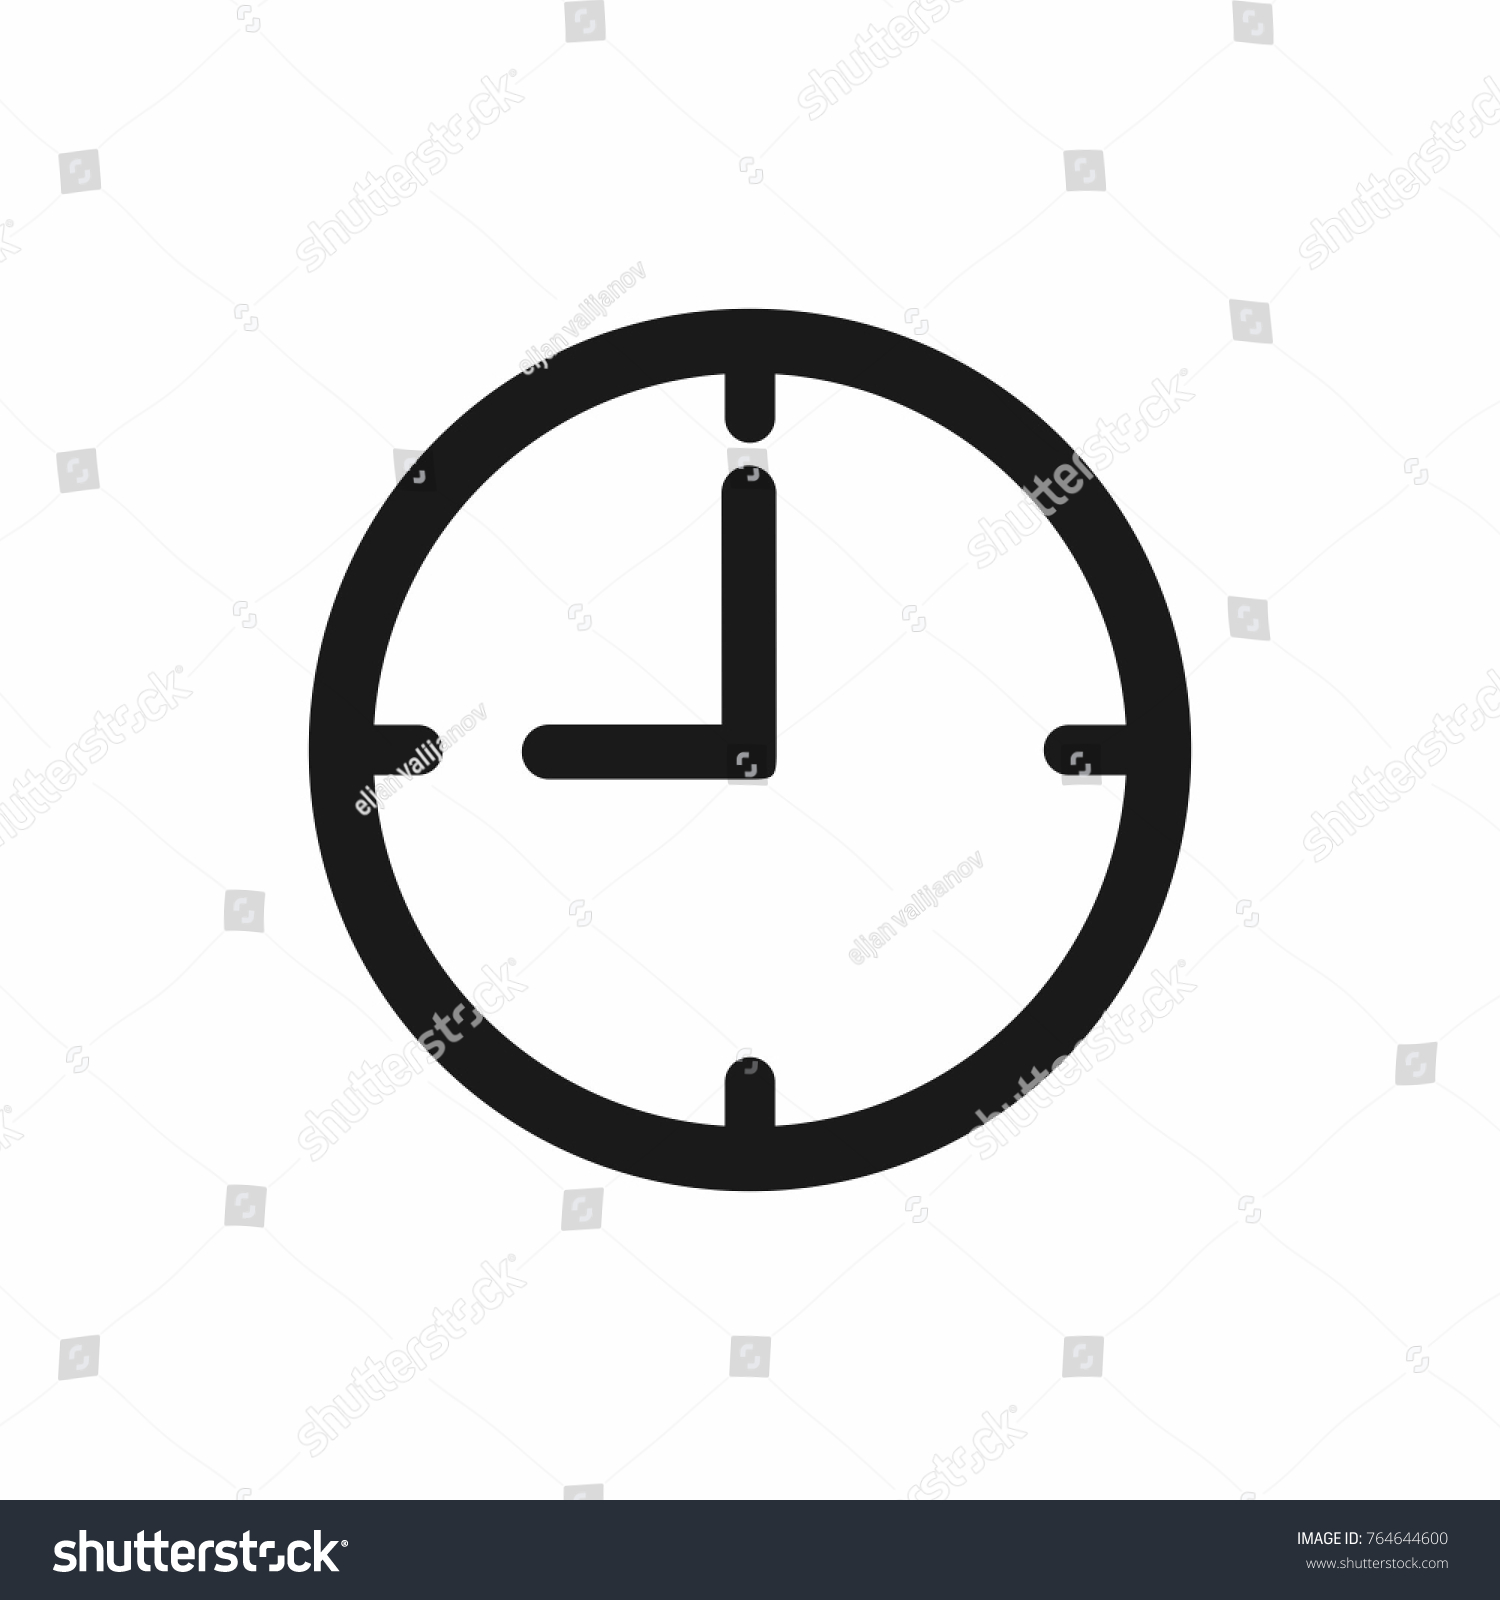 Simple clock icon Royalty Free Vector Image - VectorStock